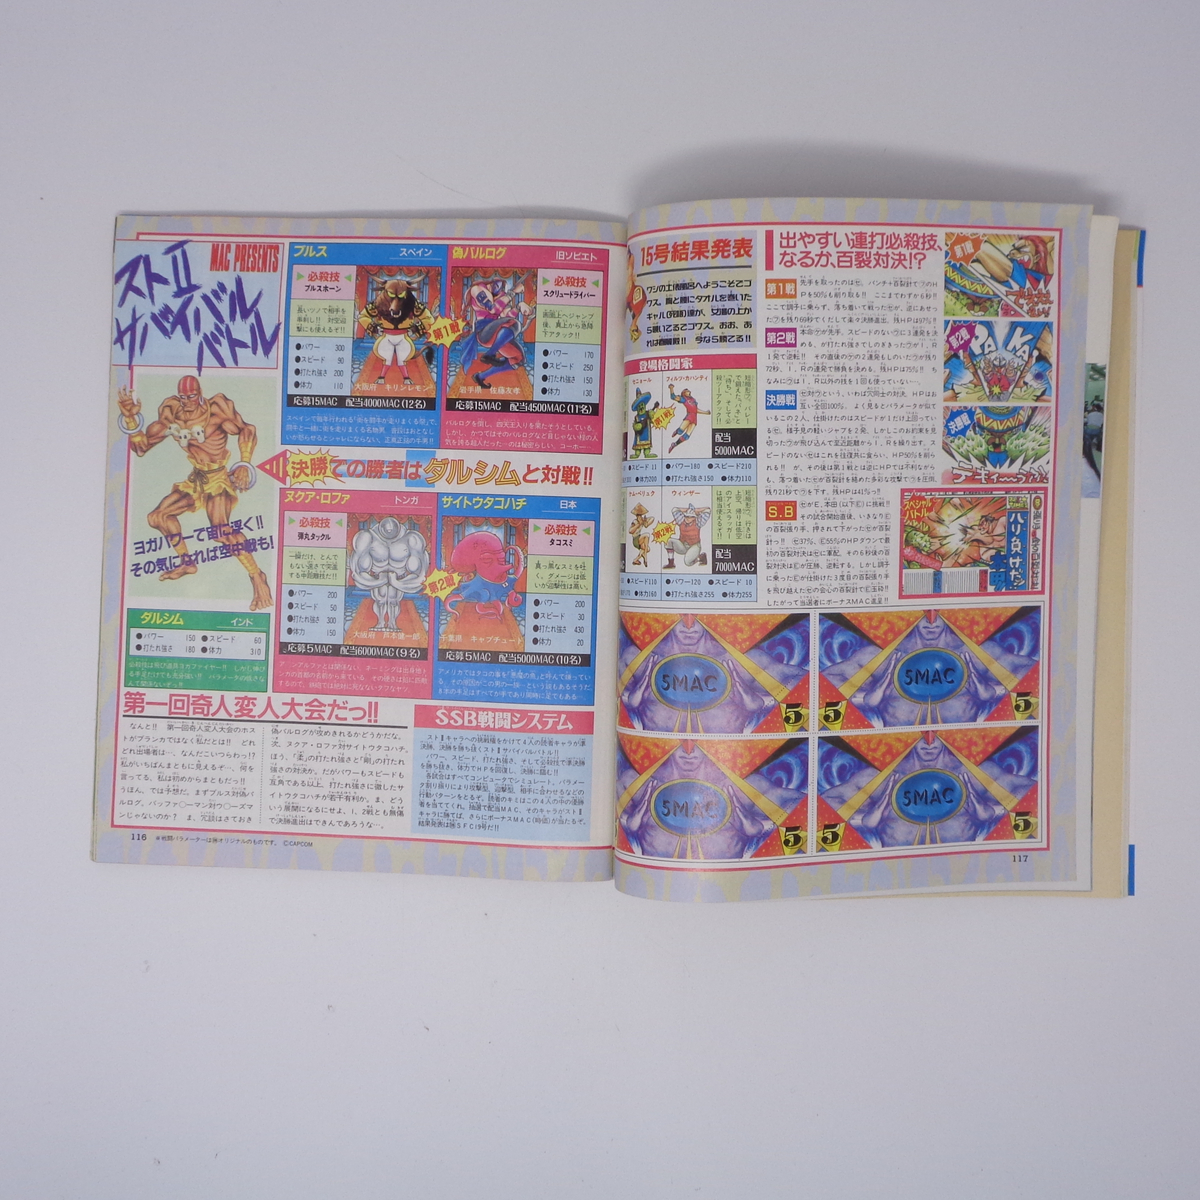 マルカツ スーパーファミコン 1992年9月25日号VOL.17 別冊付録無し/DQ5/ファミコンスペースワールド92/ゲーム雑誌[Free Shipping] 